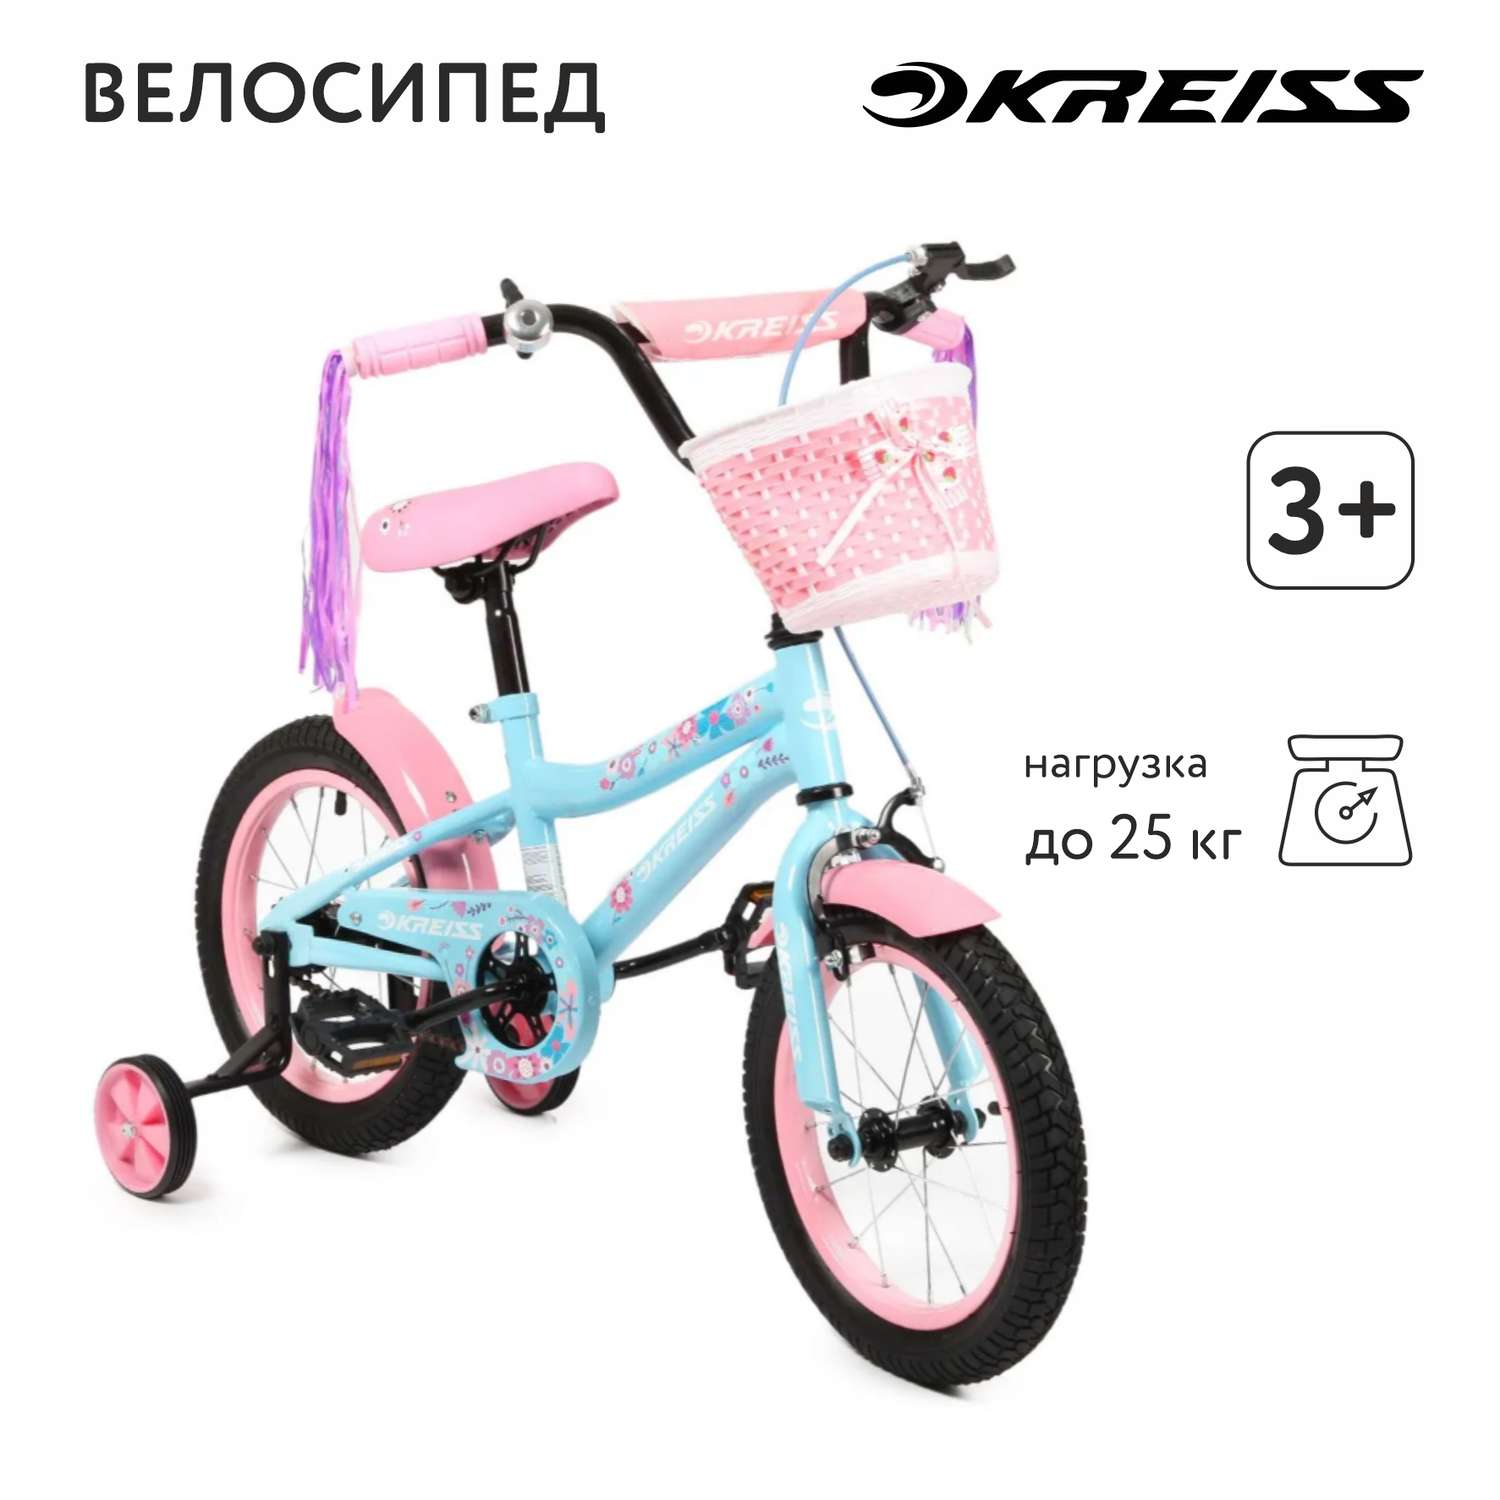 Велосипед двухколесный Kreiss 14 дюймов - фото 1